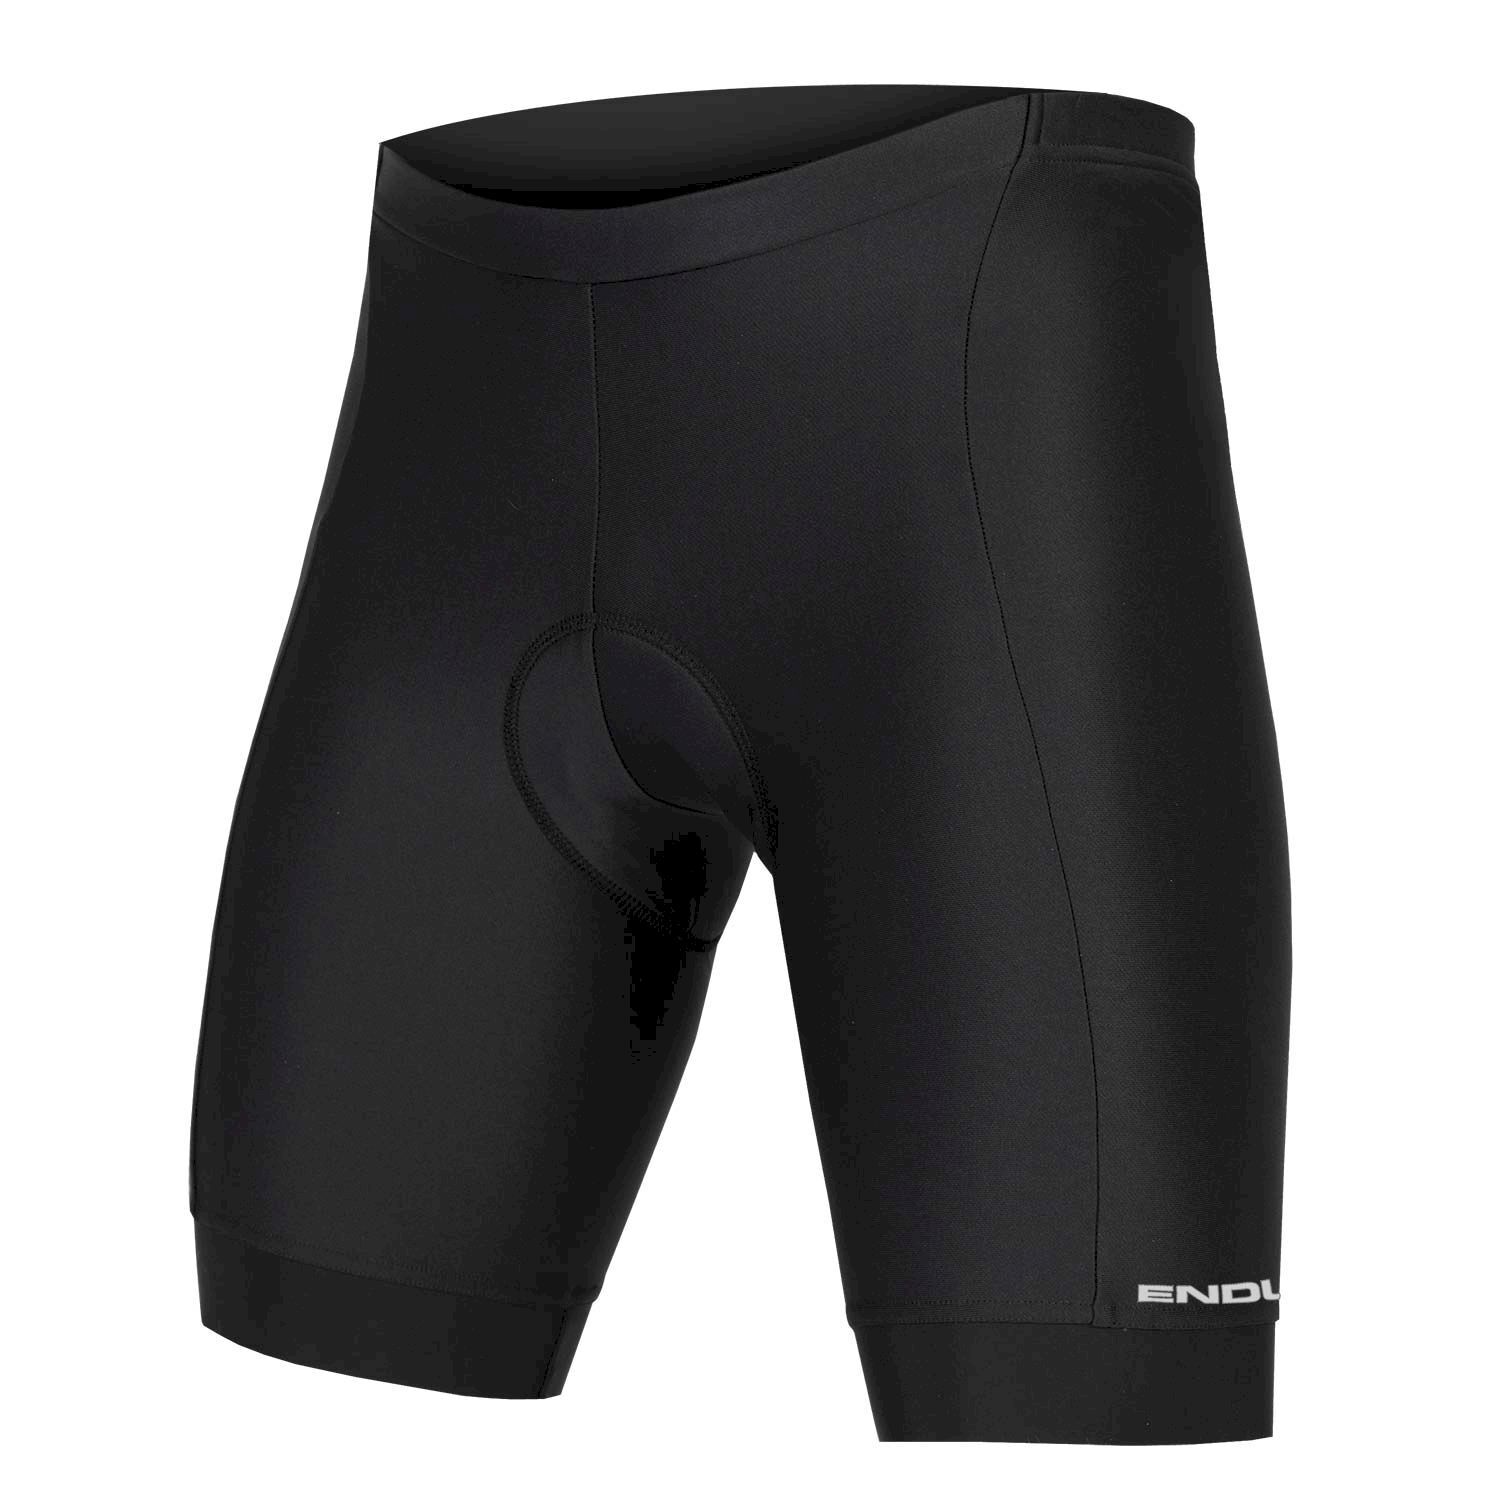 Endura Xtract Gel Short II - Cycling shorts - Men's